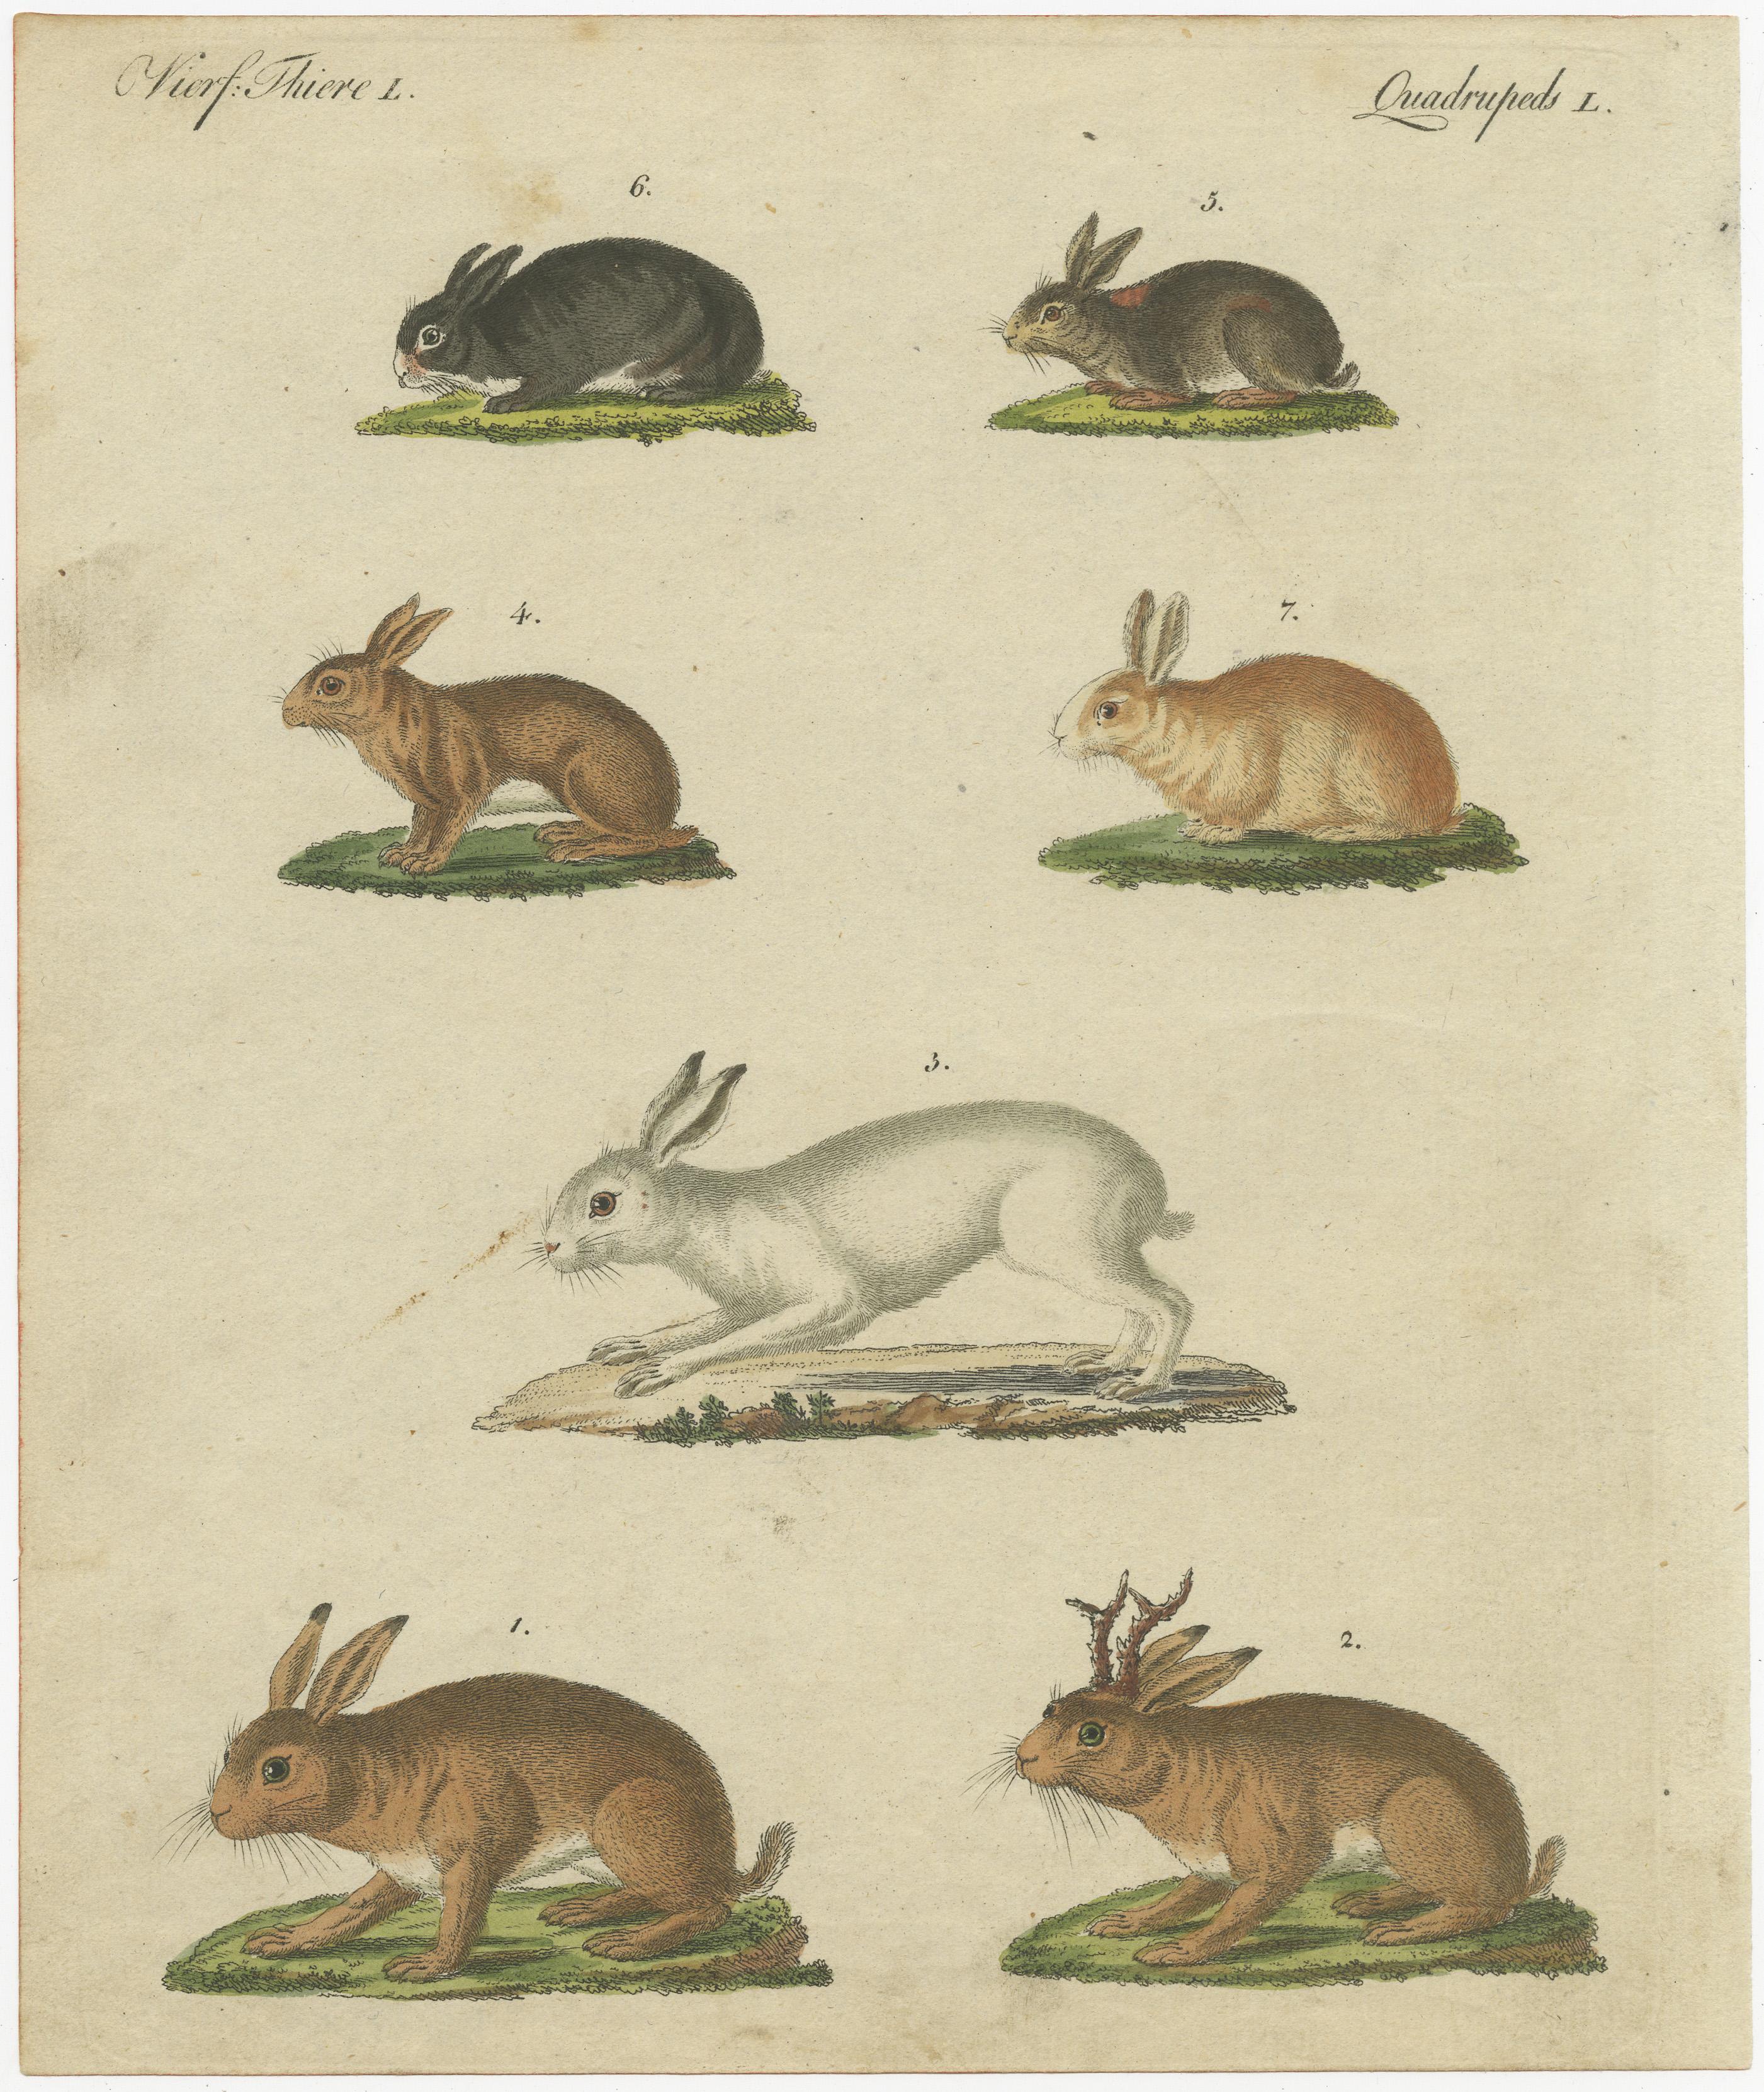 Dieser antike Originaldruck zeigt den Feldhasen, Lepus timidus 1, die mythische Schakalope oder den gehörnten Hasen, Lepus temperamentalus 2, den Schneehasen, Lepus timidus 3, den Schneeschuhhasen, Lepus americanus 4, das Kaninchen, Lepus cuniculus